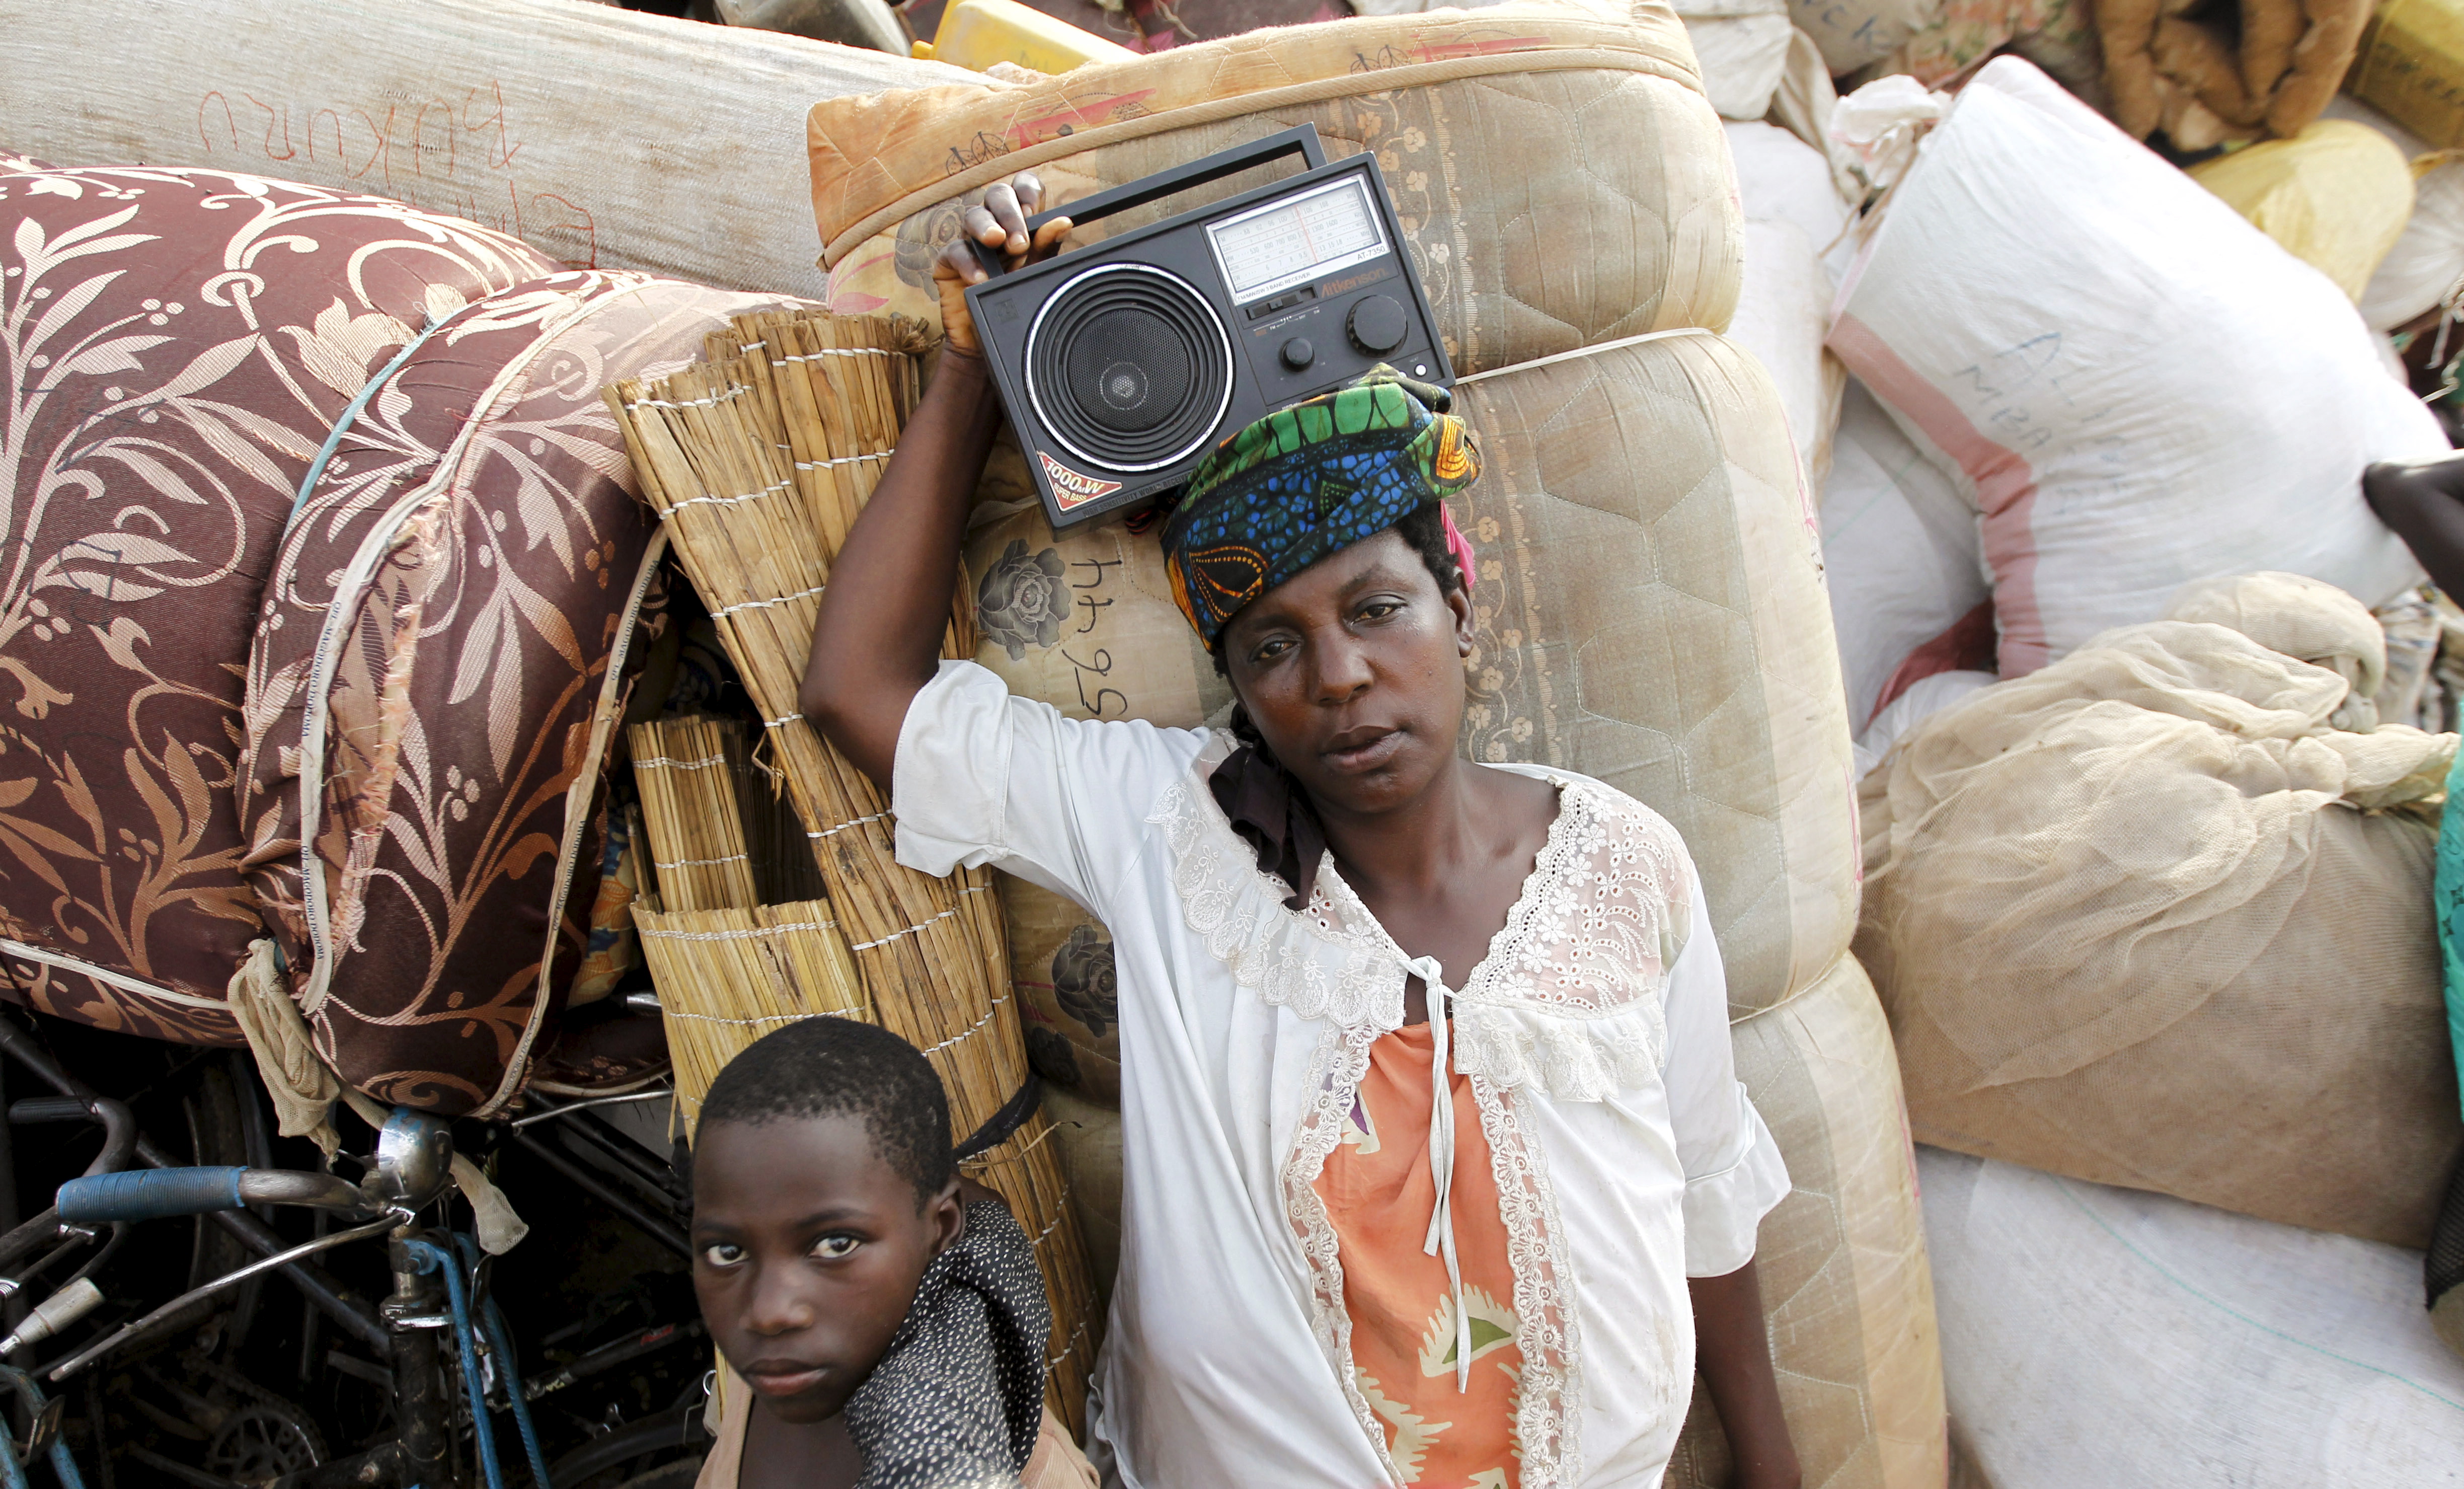 لاجئة بوروندية تحمل الراديو وهي تستريح مع أمتعتها على ضفاف بحيرة تنجانيقا في قرية كاكونغا في منطقة كيغوما غرب تنزانيا، 18 أيار 2015